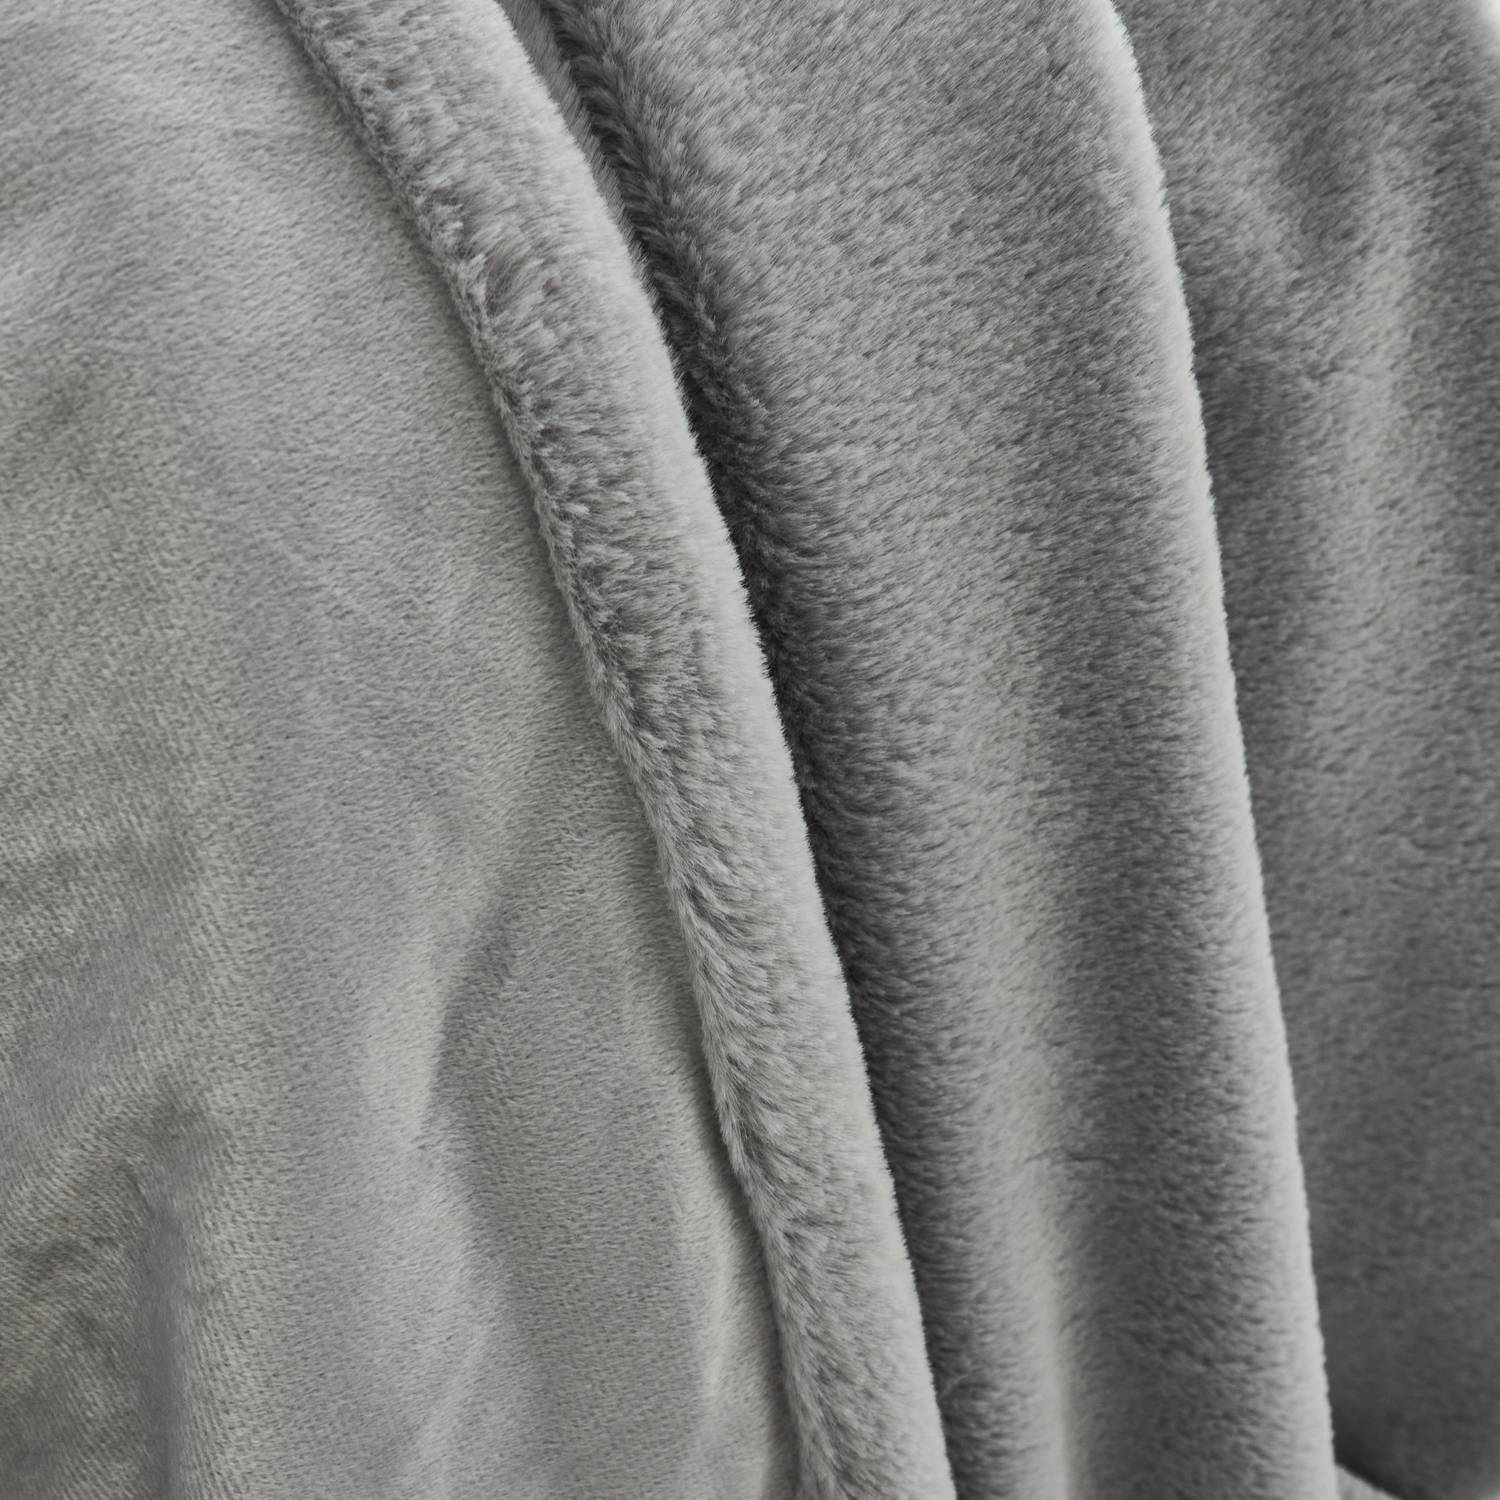 Plaid fausse fourrure gris clair poil long doublure polaire 160 x 230cm - LAPONIE Photo2